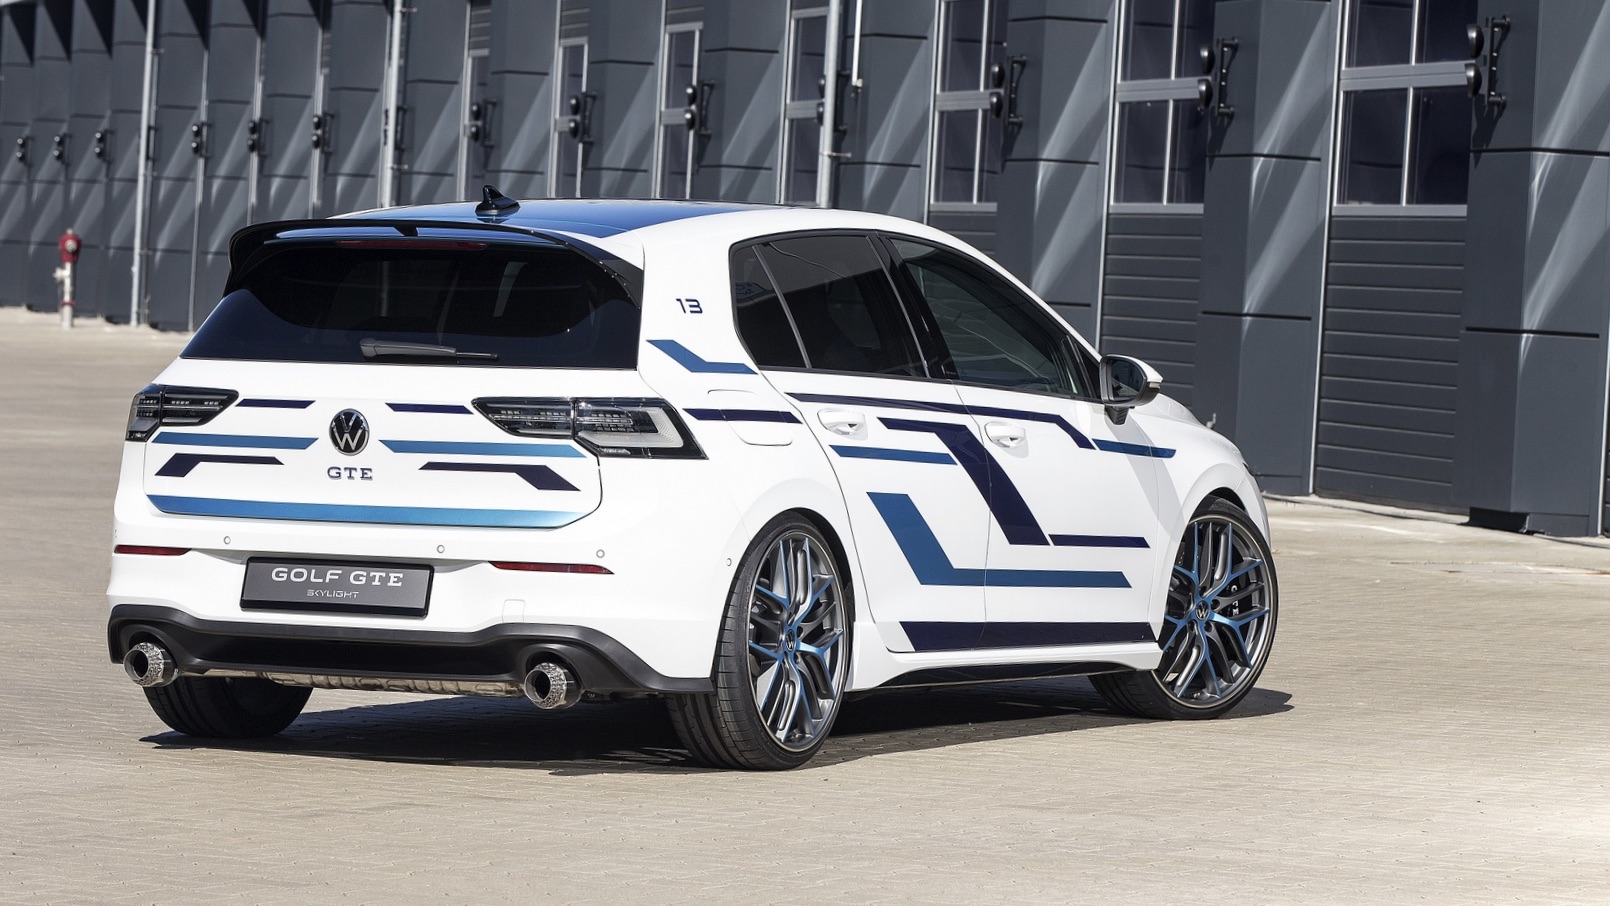 Volkswagen Golf GTE Starlight Concept 2021